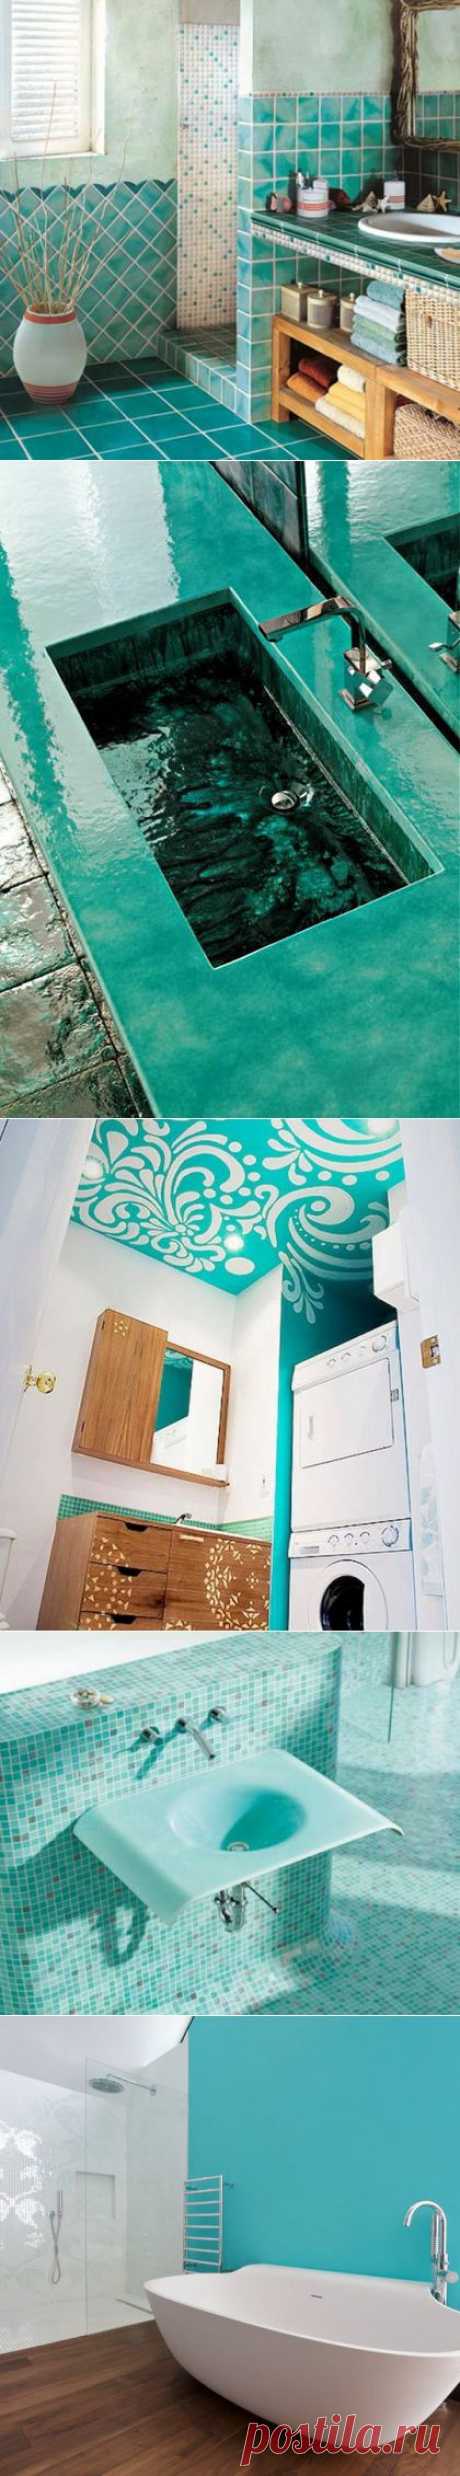 Свежий бирюзовый в интерьере ванной комнаты - Ремонт и дизайн